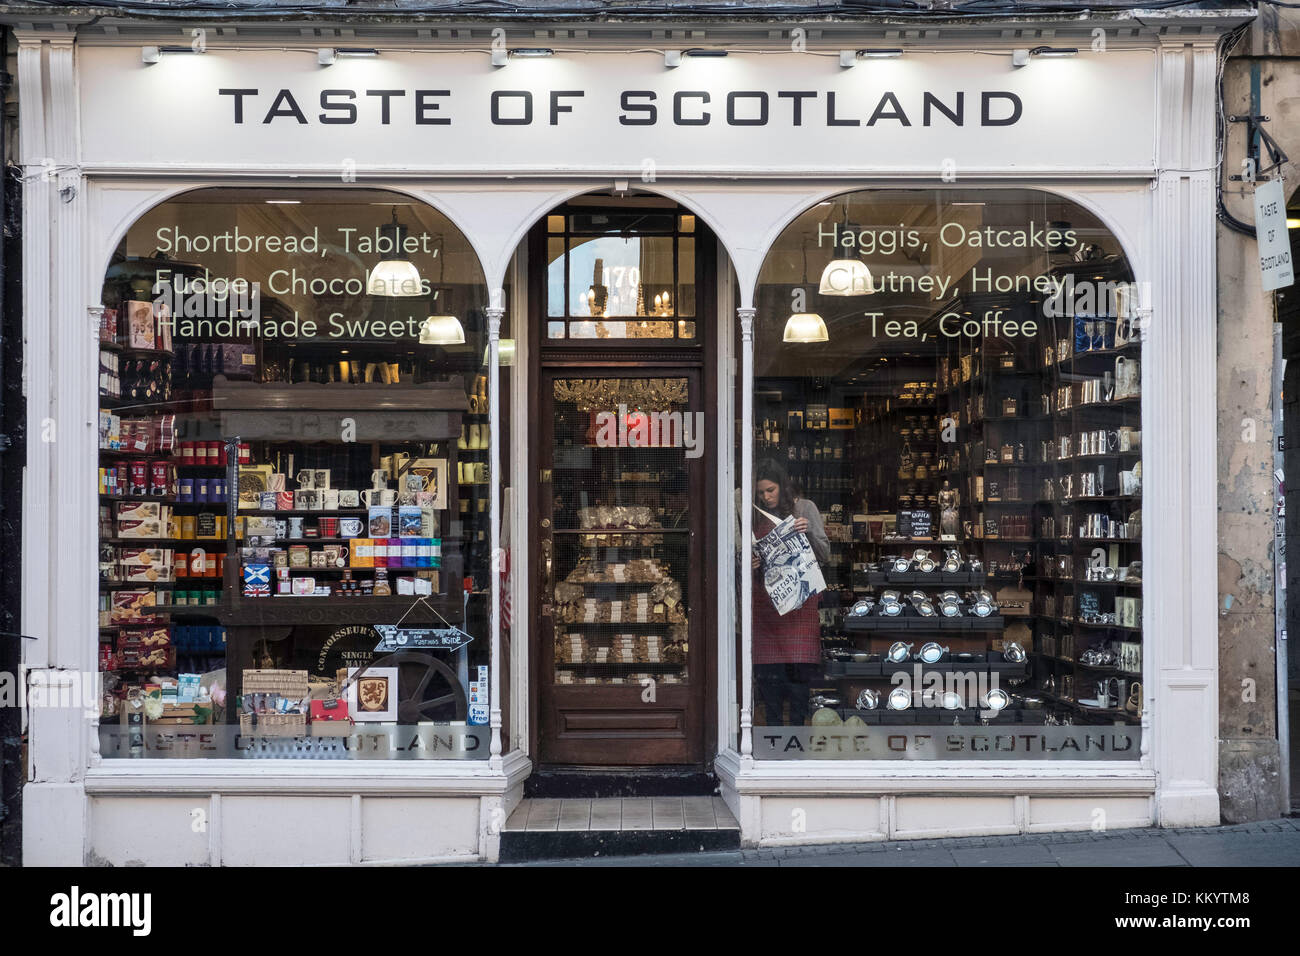 Negozio Taste of Scotland che vende cibo e altri prodotti prodotti prodotti in Scozia nel centro storico di Edimburgo, Scozia, Regno Unito. Foto Stock